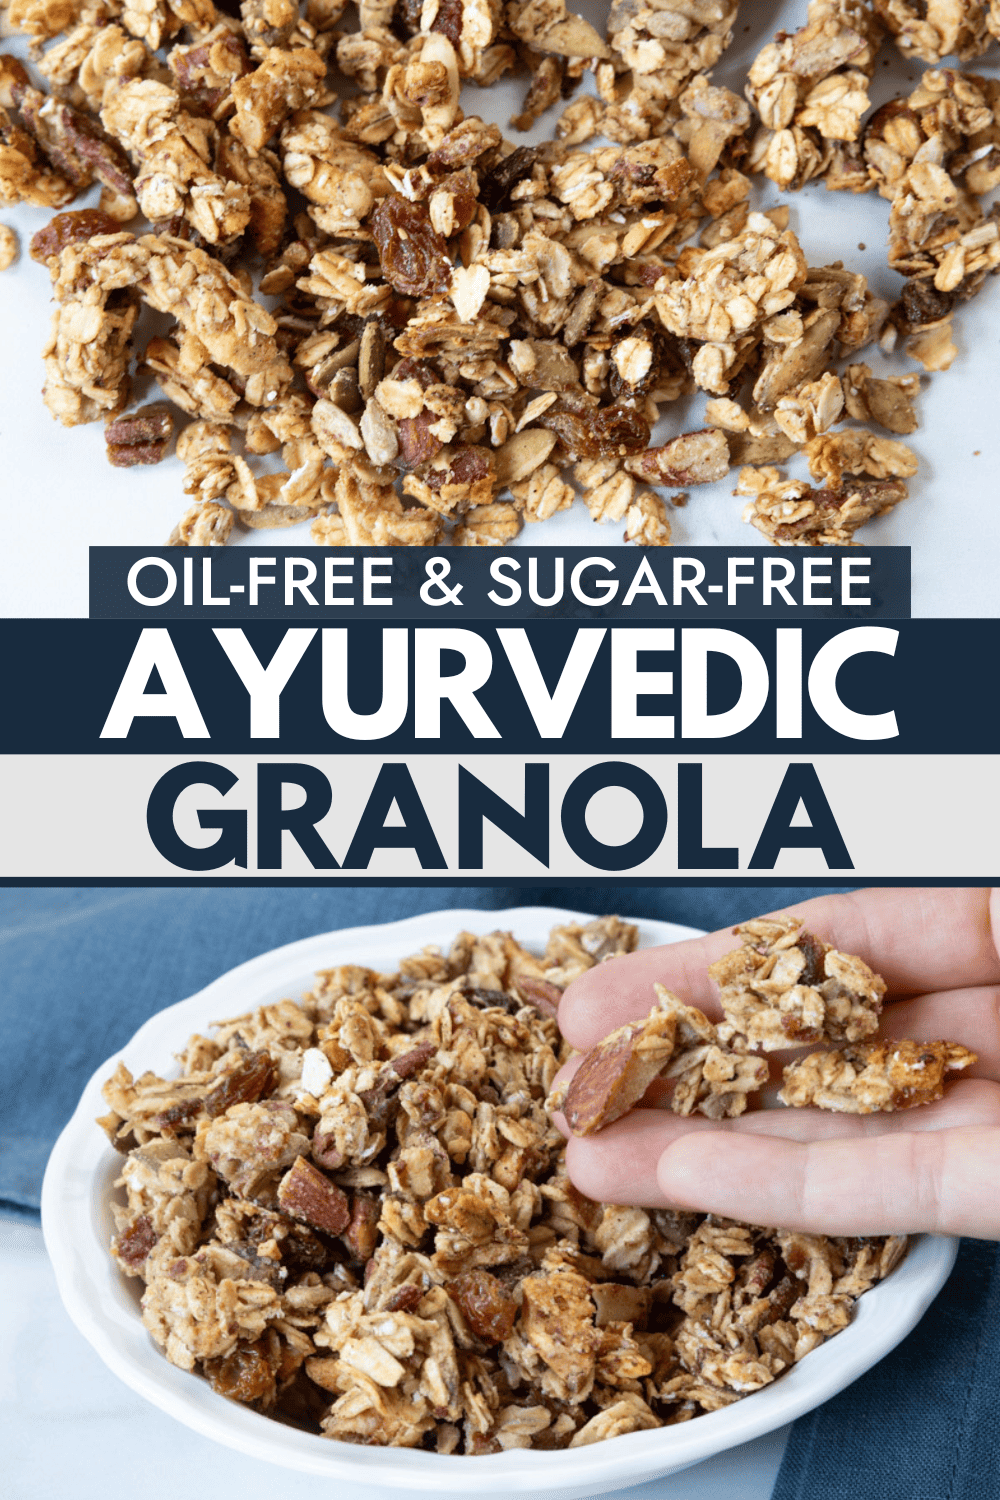 Ayurvedic Granola (Oil-free, Sugar-free)